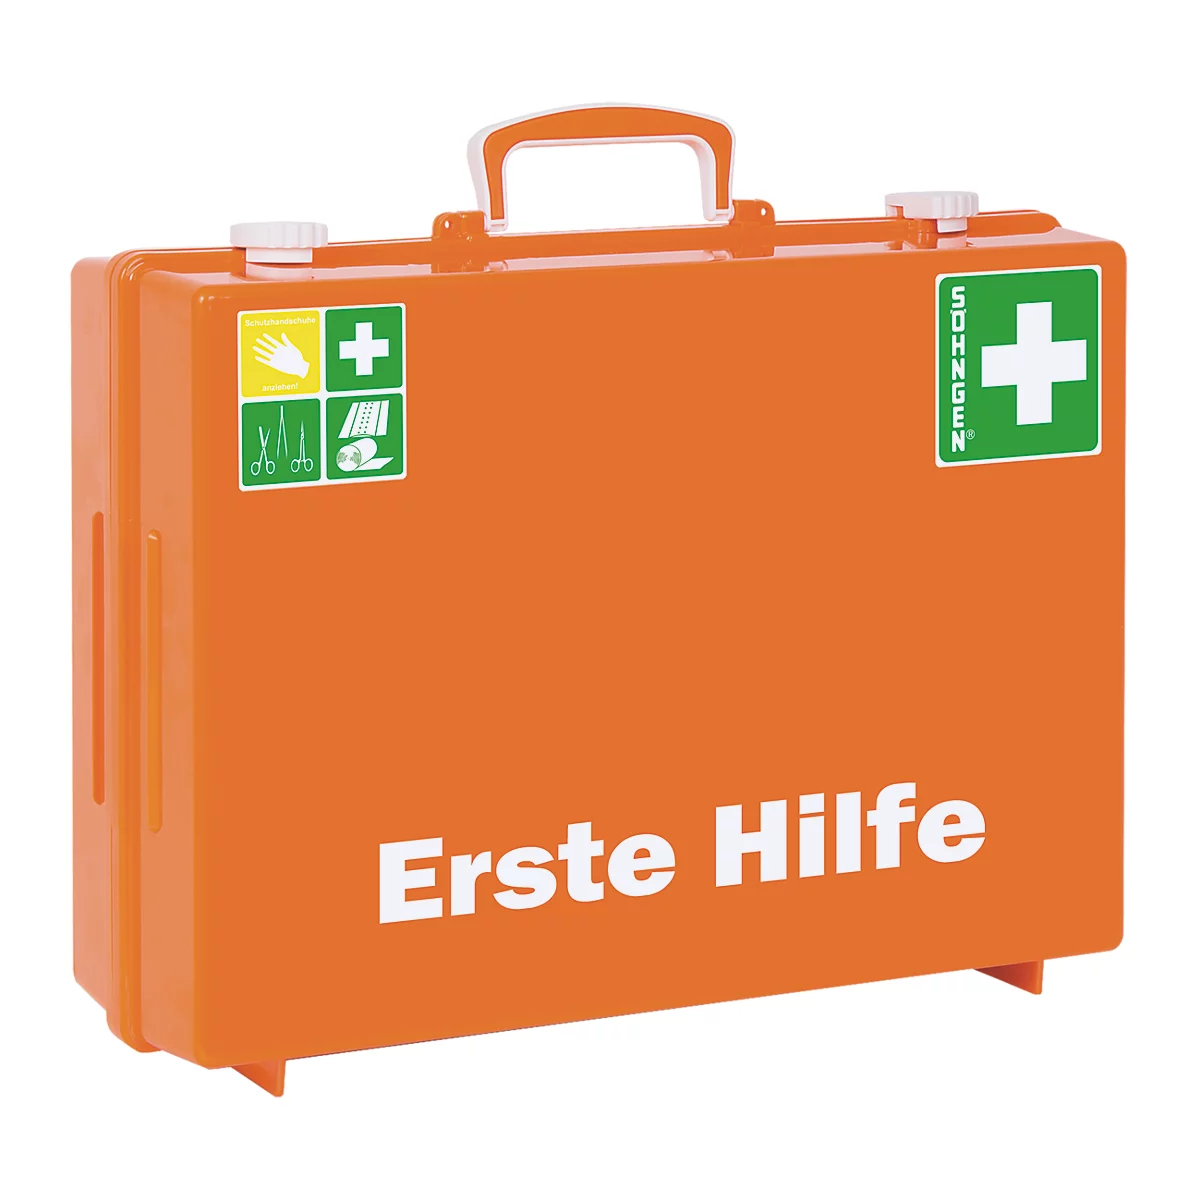 Erste-Hilfe-Koffer MULTI nach DIN 13 169